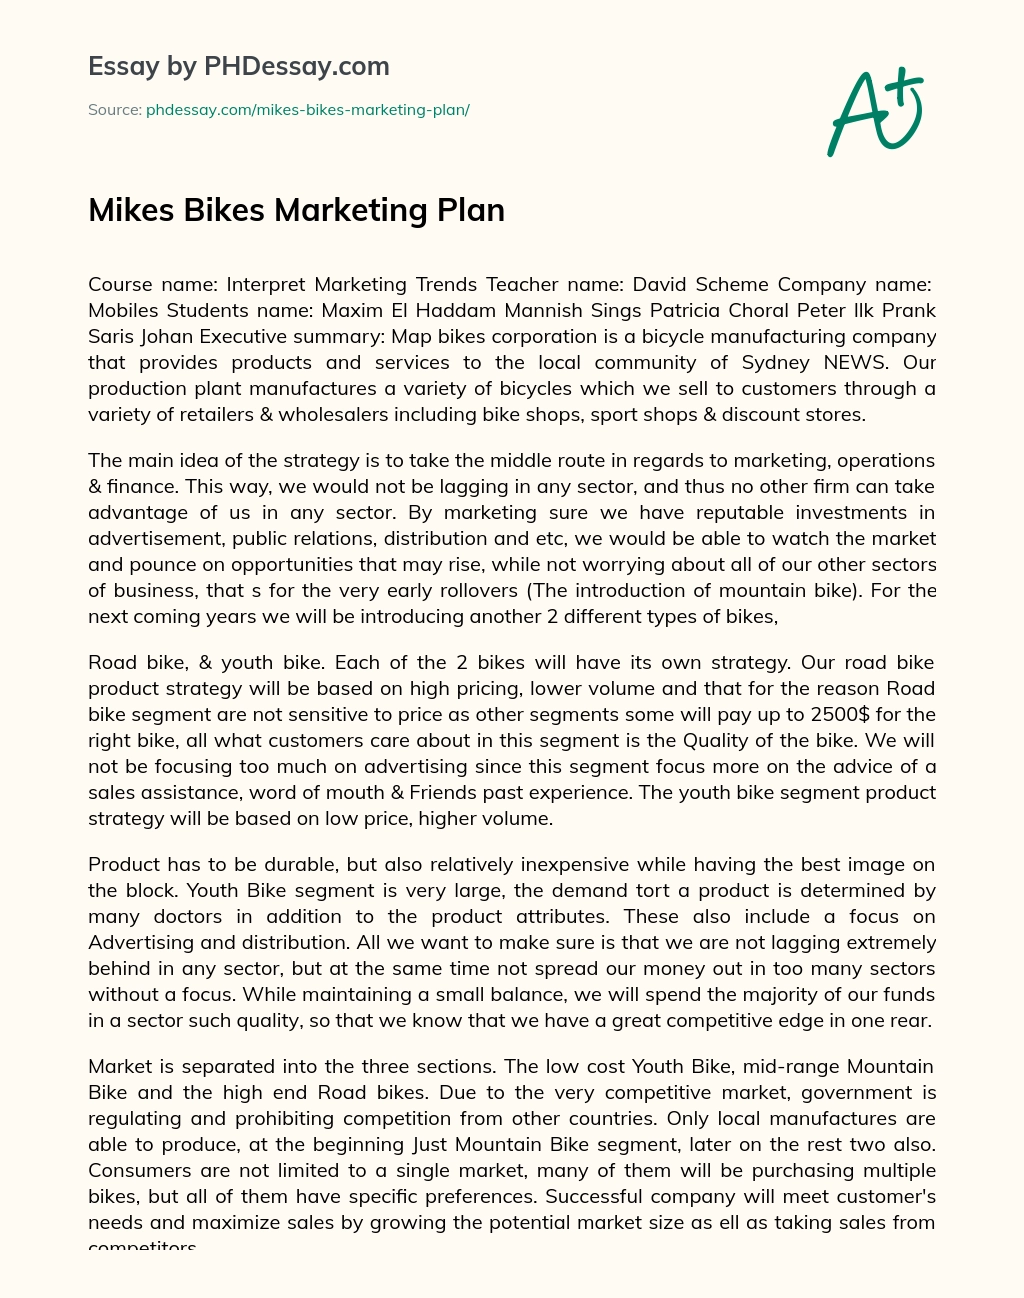 Mikes Bikes Marketing Plan essay